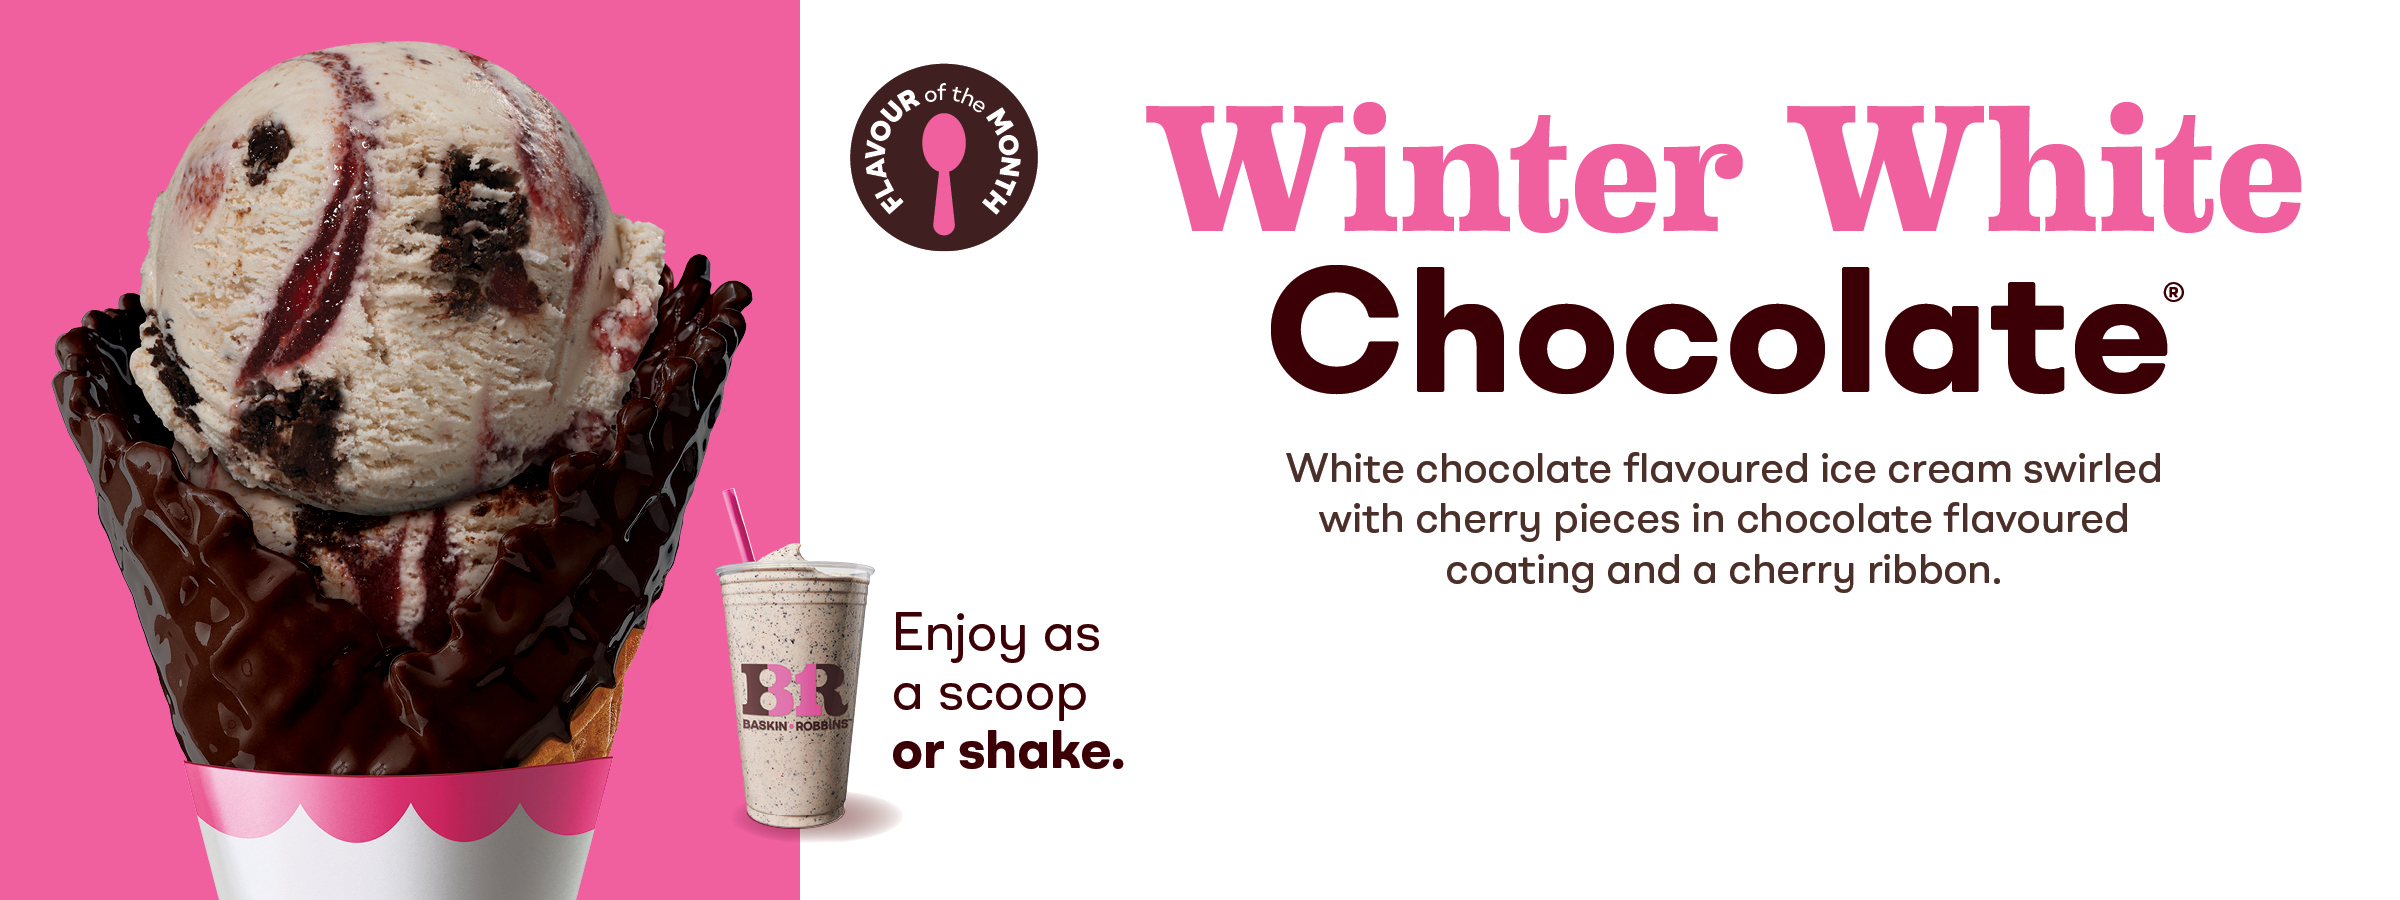 Winter White Chocolate